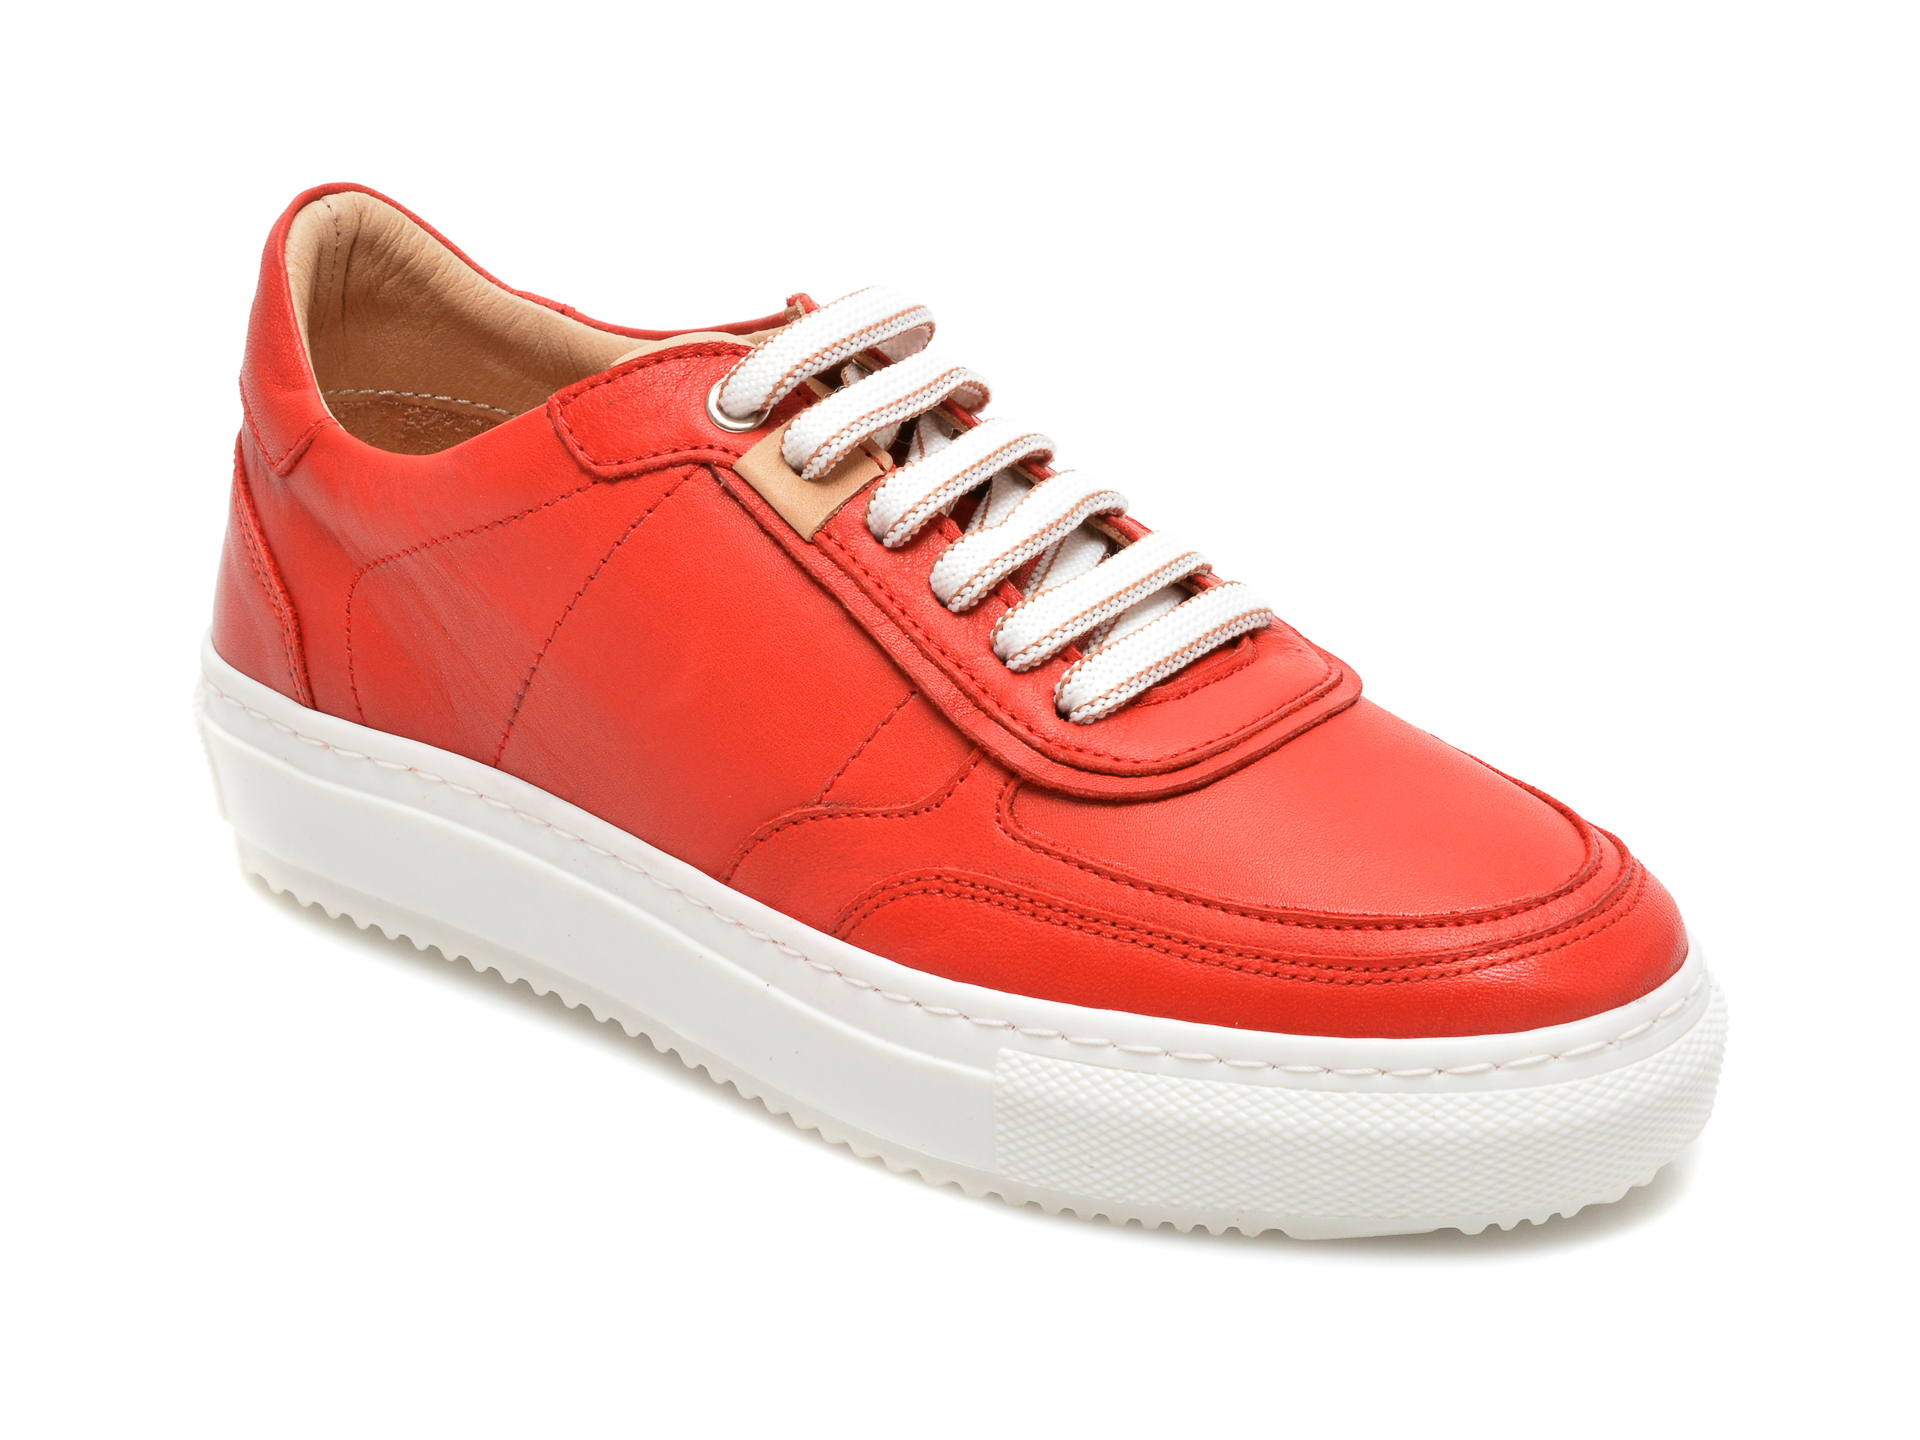 Pantofi FLAVIA PASSINI rosii, 62379, din piele naturala